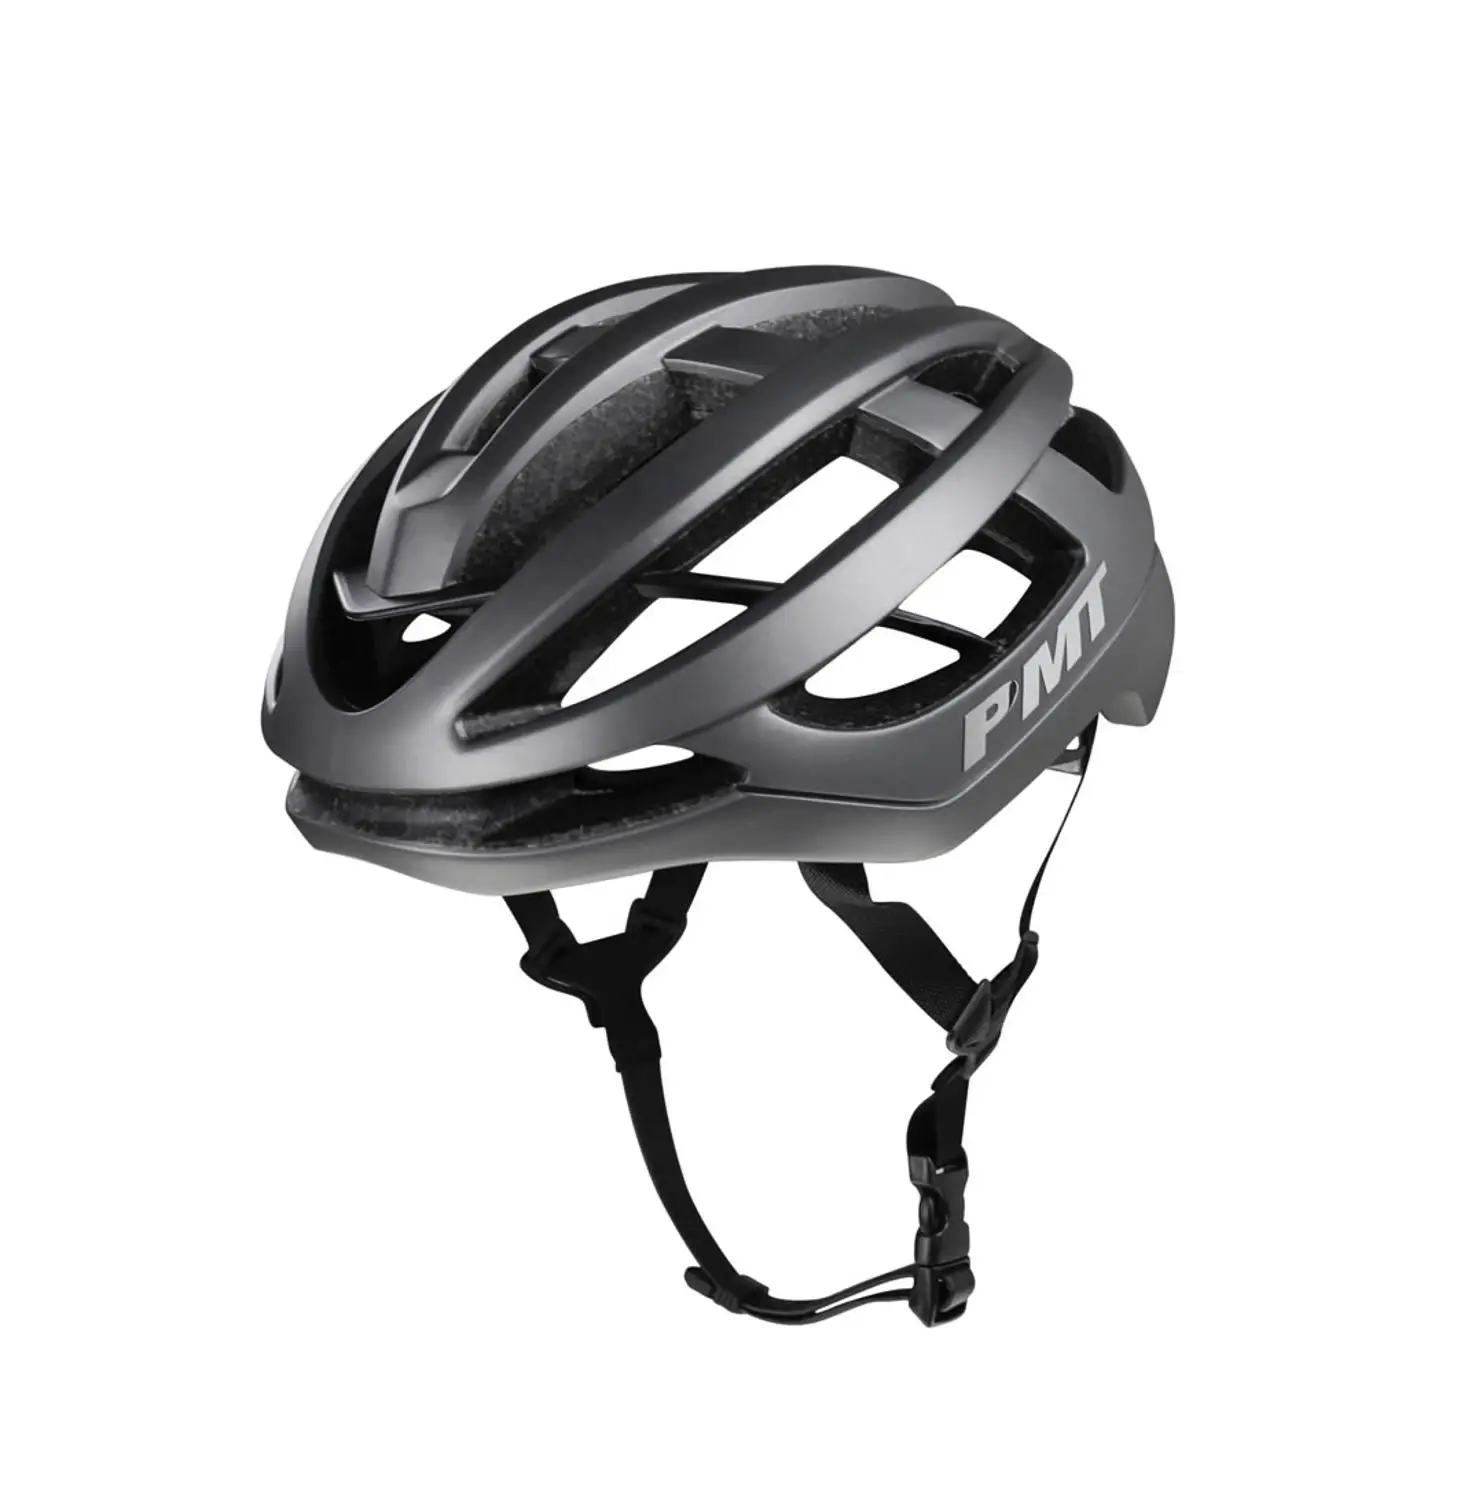 PMT велосипедный шлем для шоссейного велосипеда 230 г ультралегкий шлем с внутренней формовкой MTB специализируется на велосипеде с отверстиями для безопасности шлемы 58-61 см - Цвет: Titanium